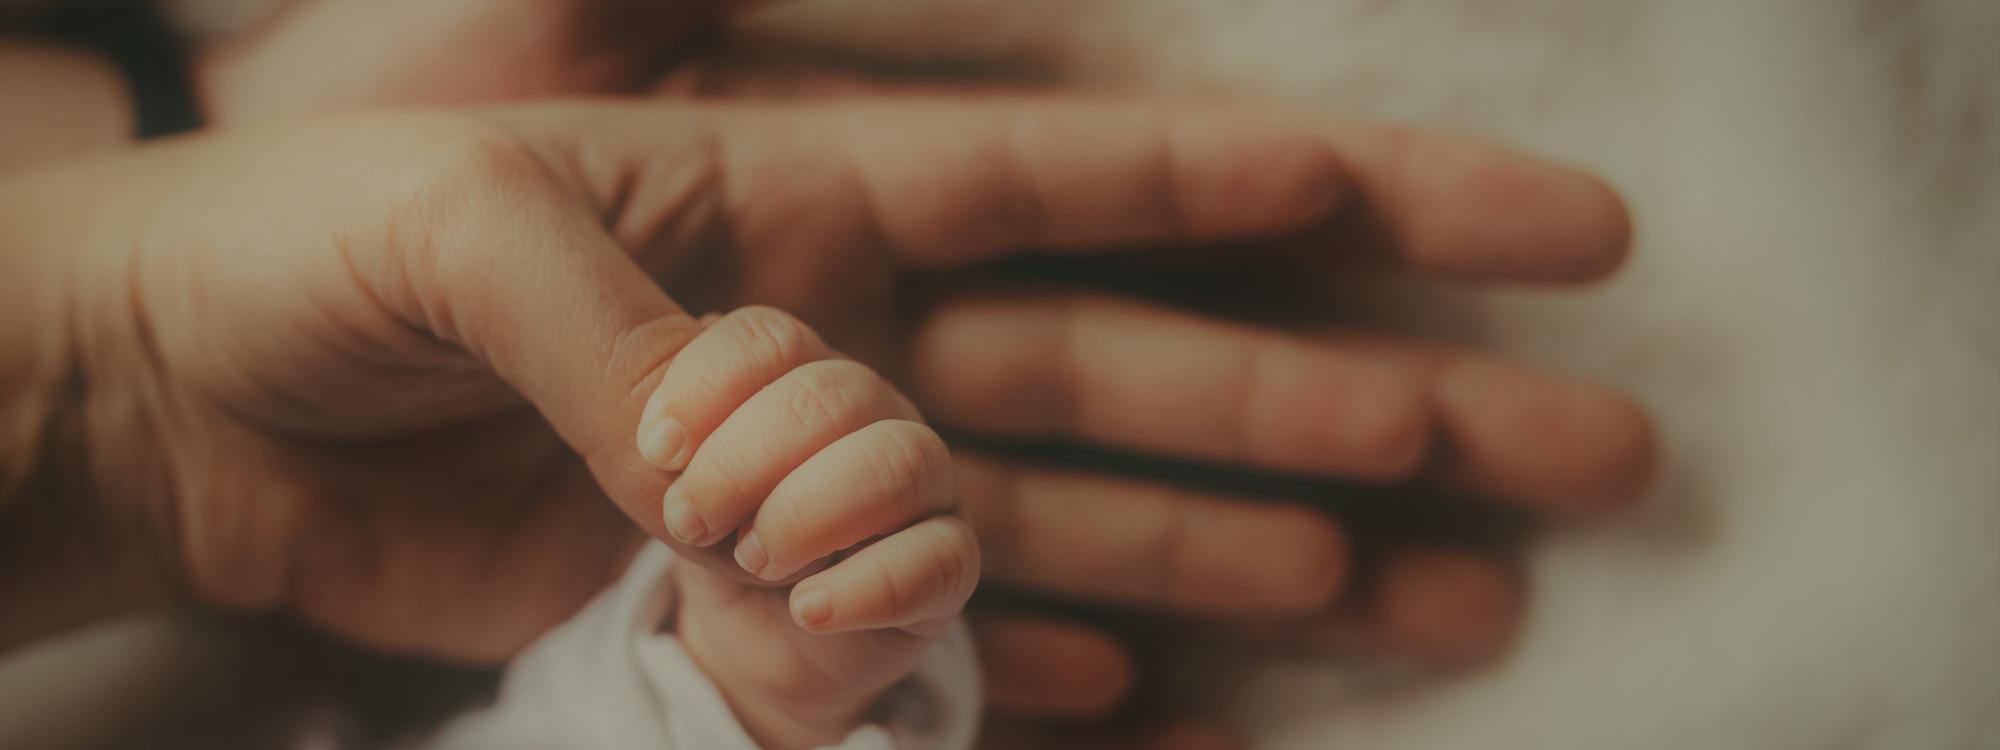 Babyhand liegt auf Elternhänden